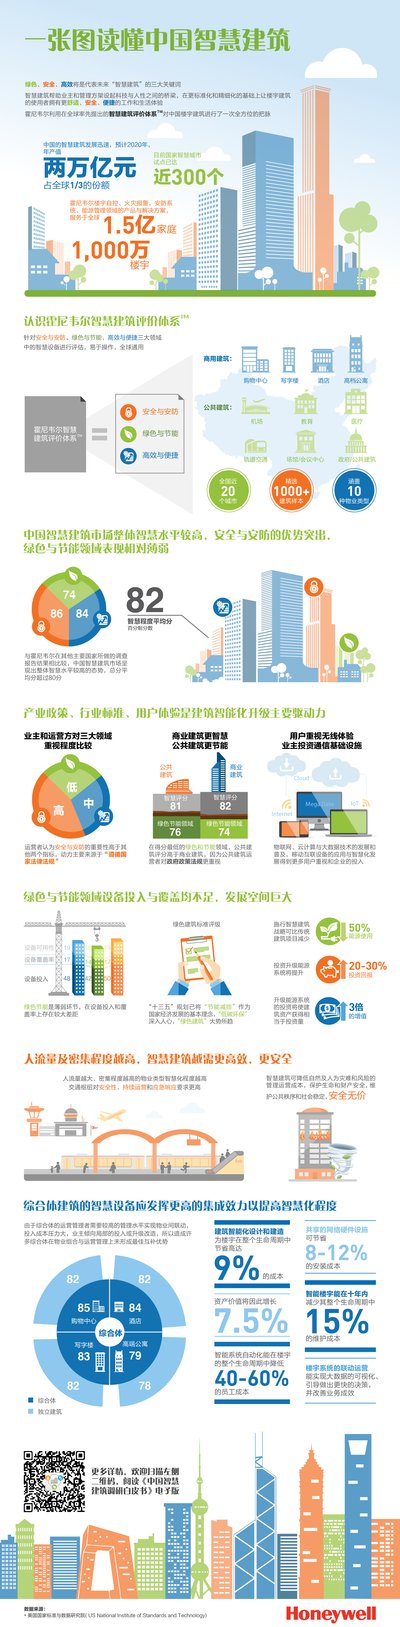 中国智慧建筑调研：绿色领域亟待改善、节能互联是趋势